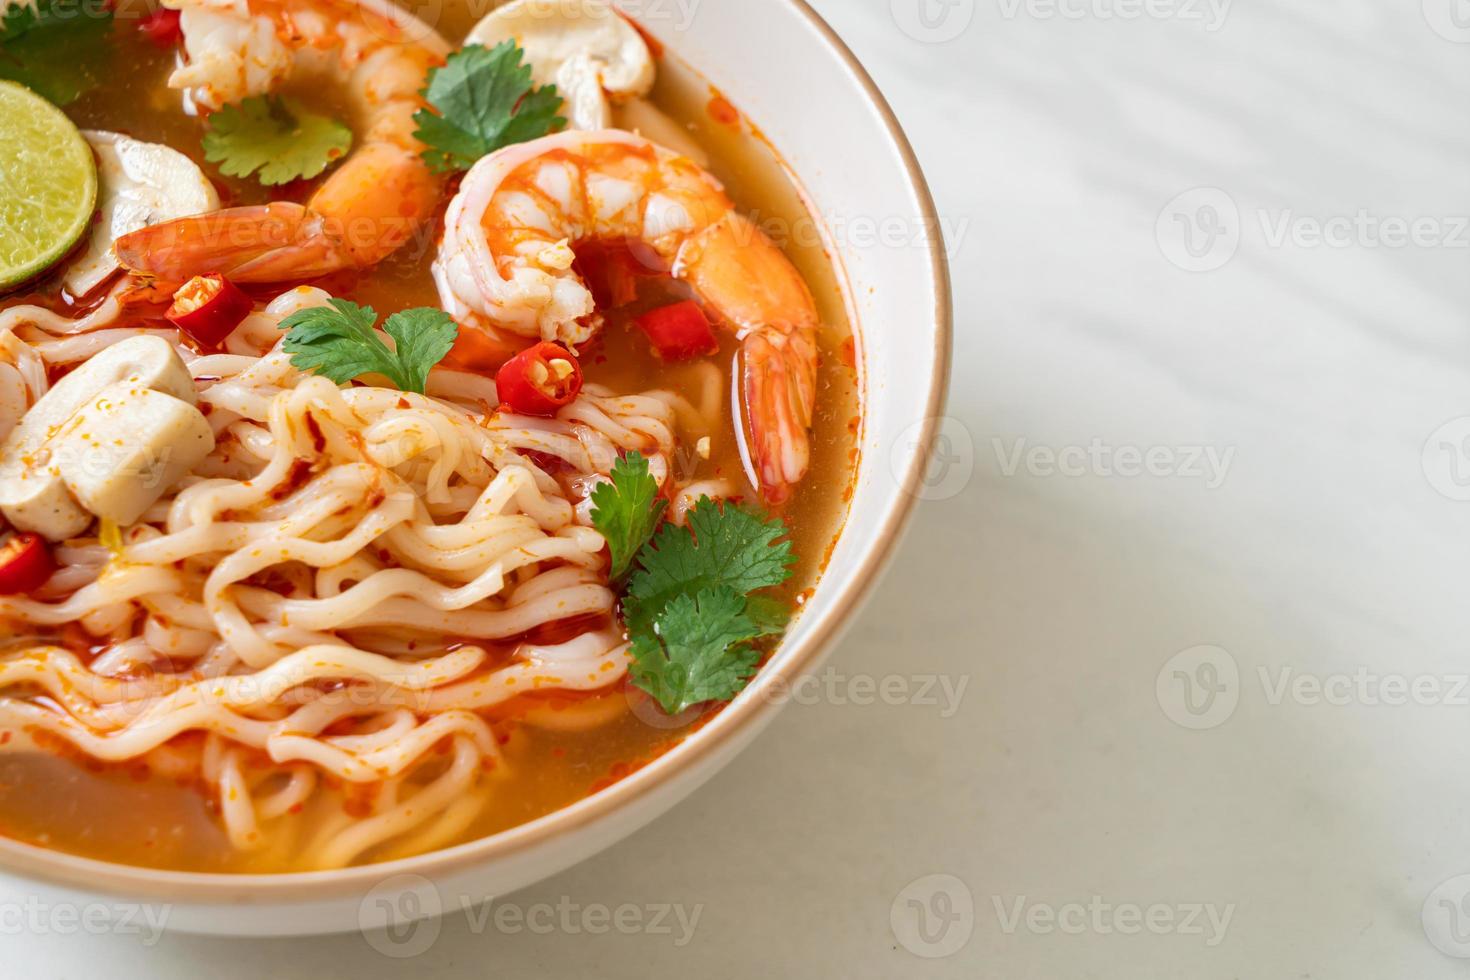 nouilles instantanées ramen dans une soupe épicée aux crevettes, ou tom yum kung - style cuisine asiatique photo